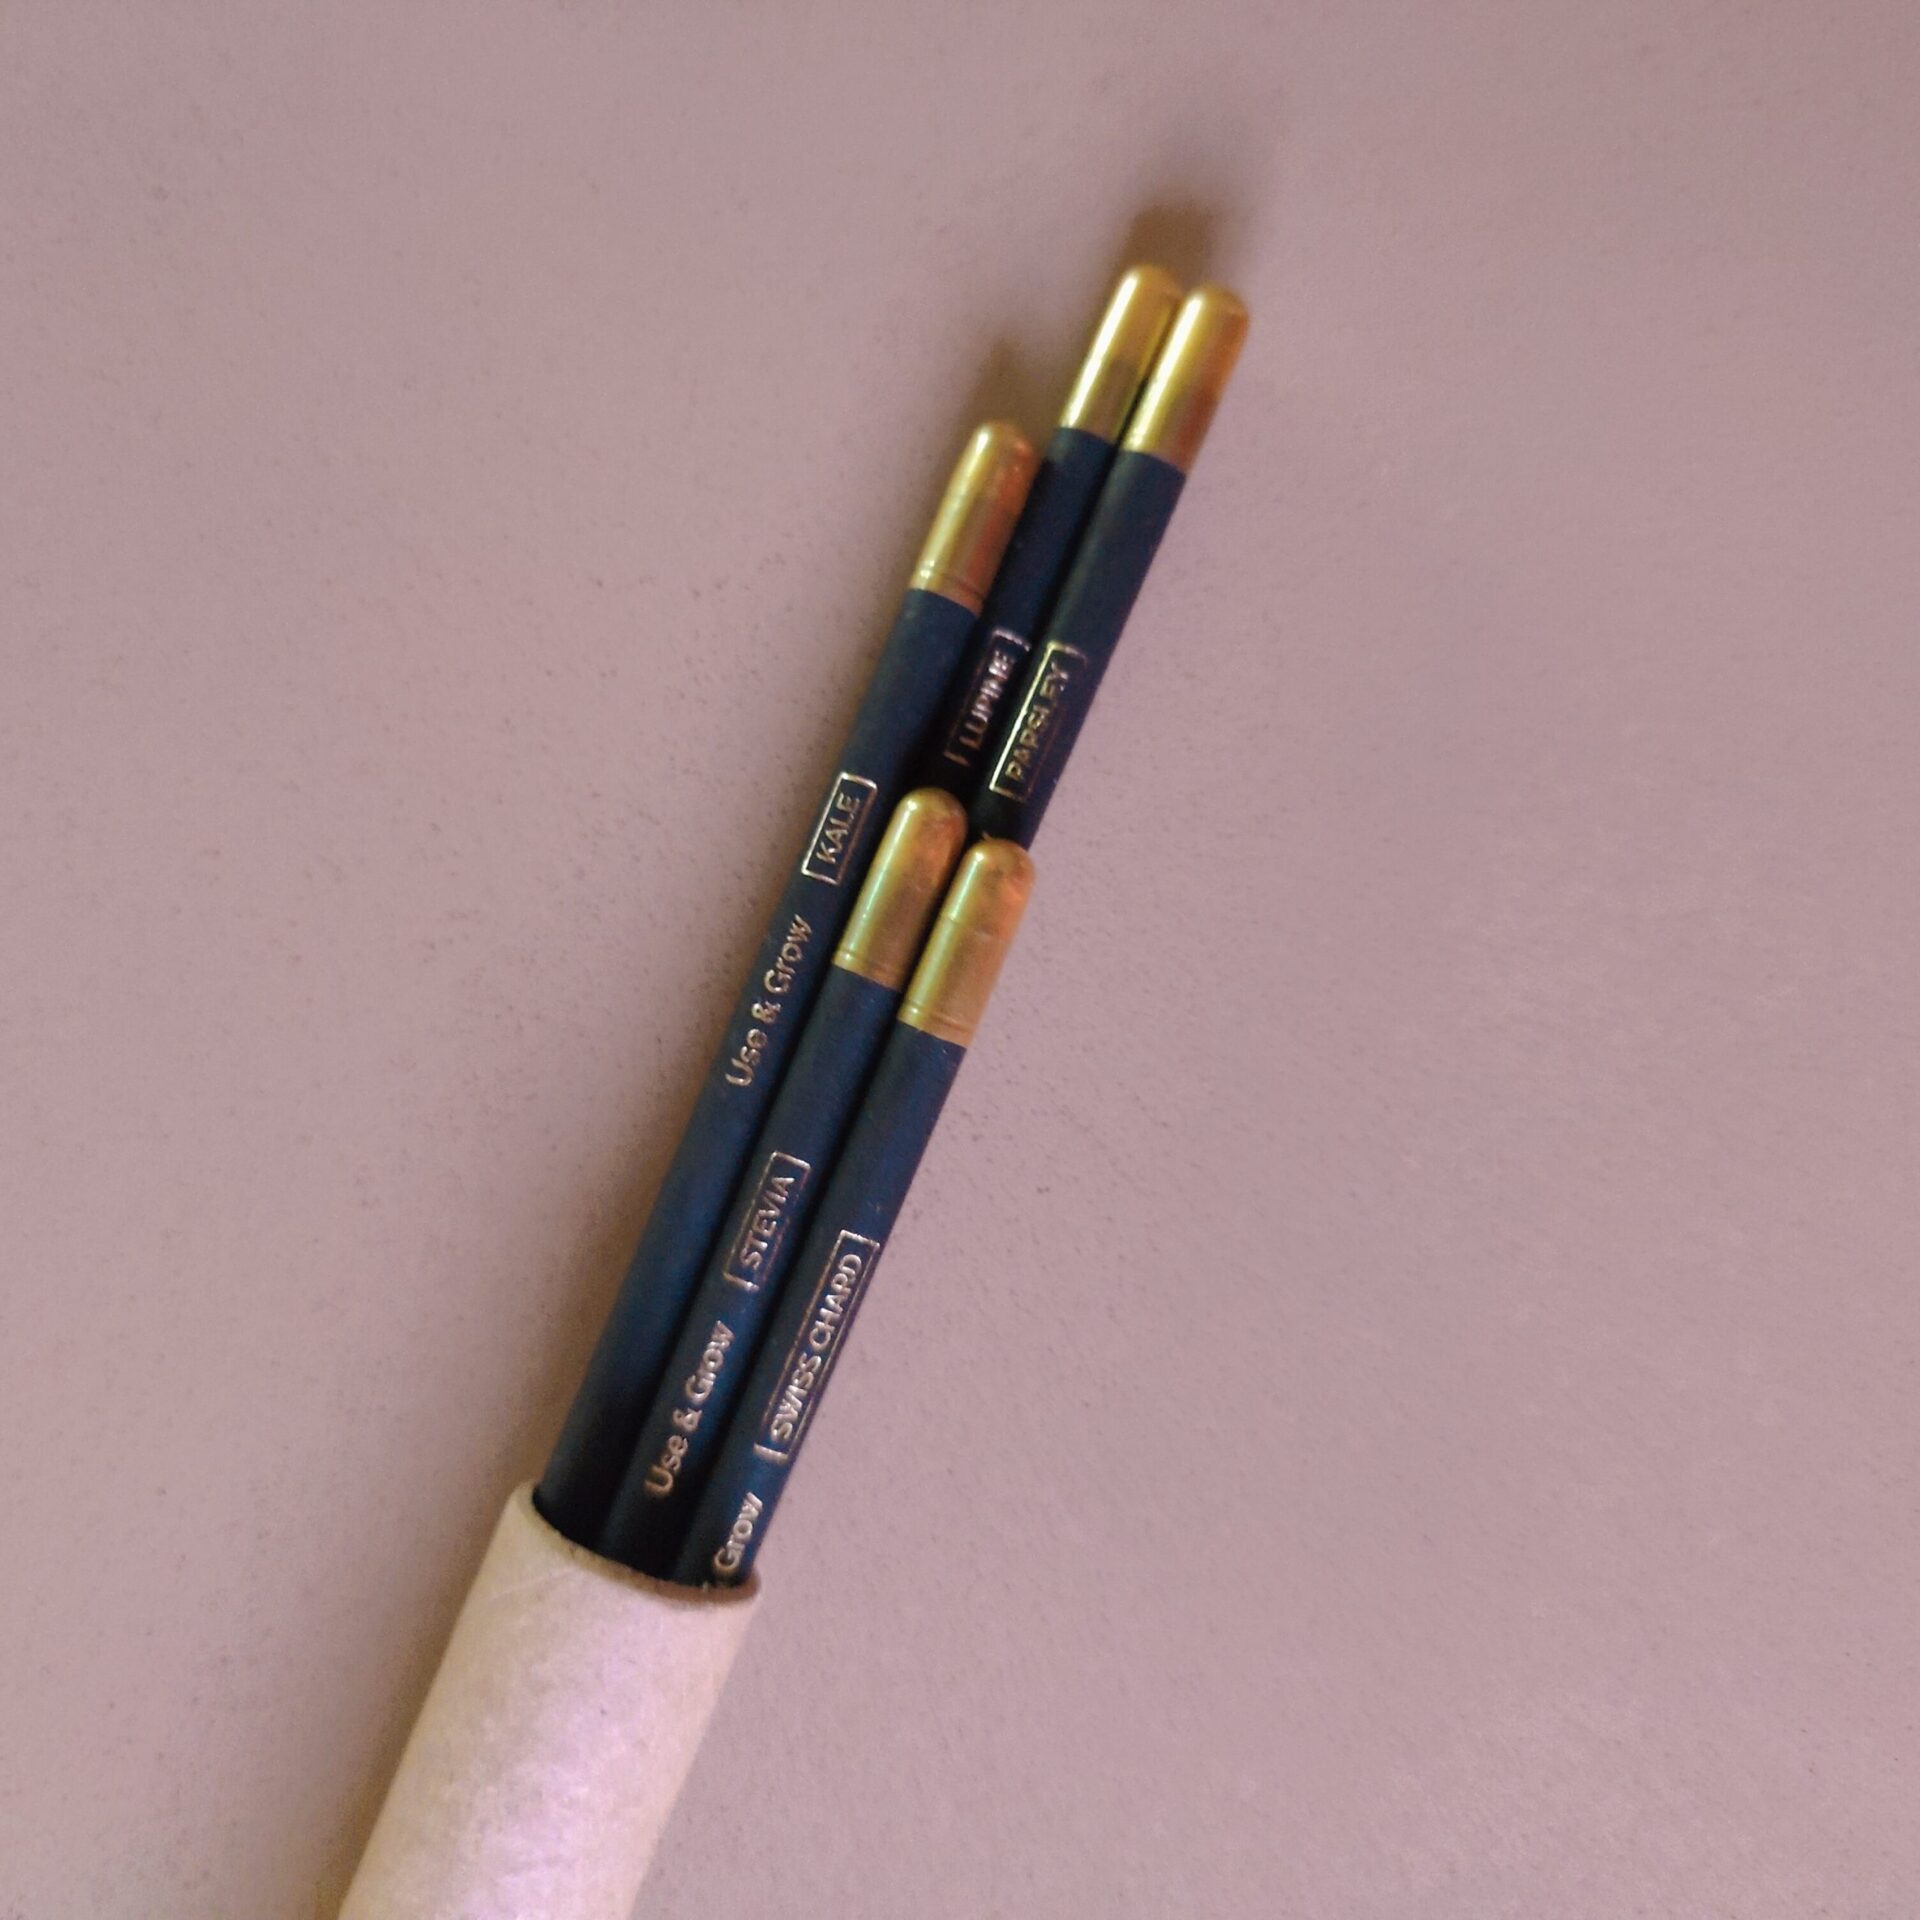 SOEL Premium Seed Pencil - Set of 5